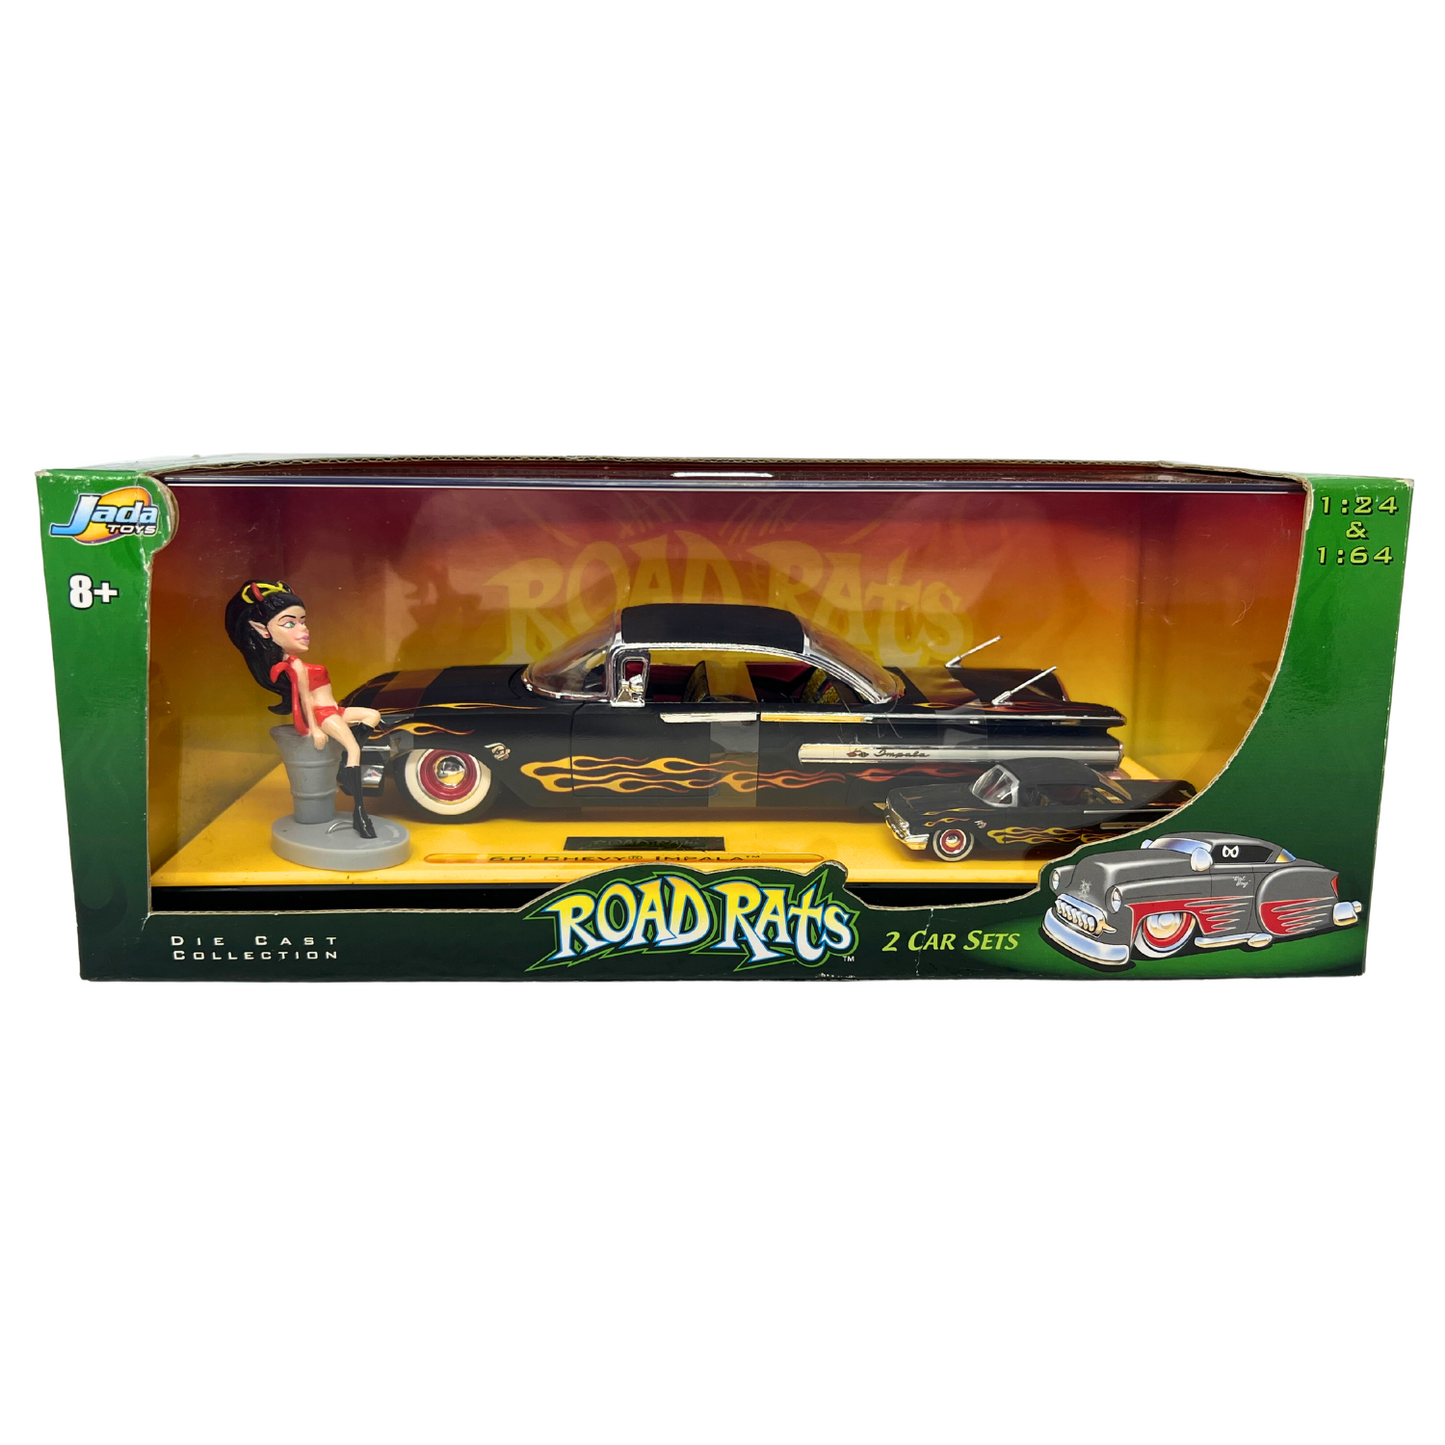 Jada Road Rats 1960 Chevy Impala 2 Car Sets 1:24 & 1:64 Diecast